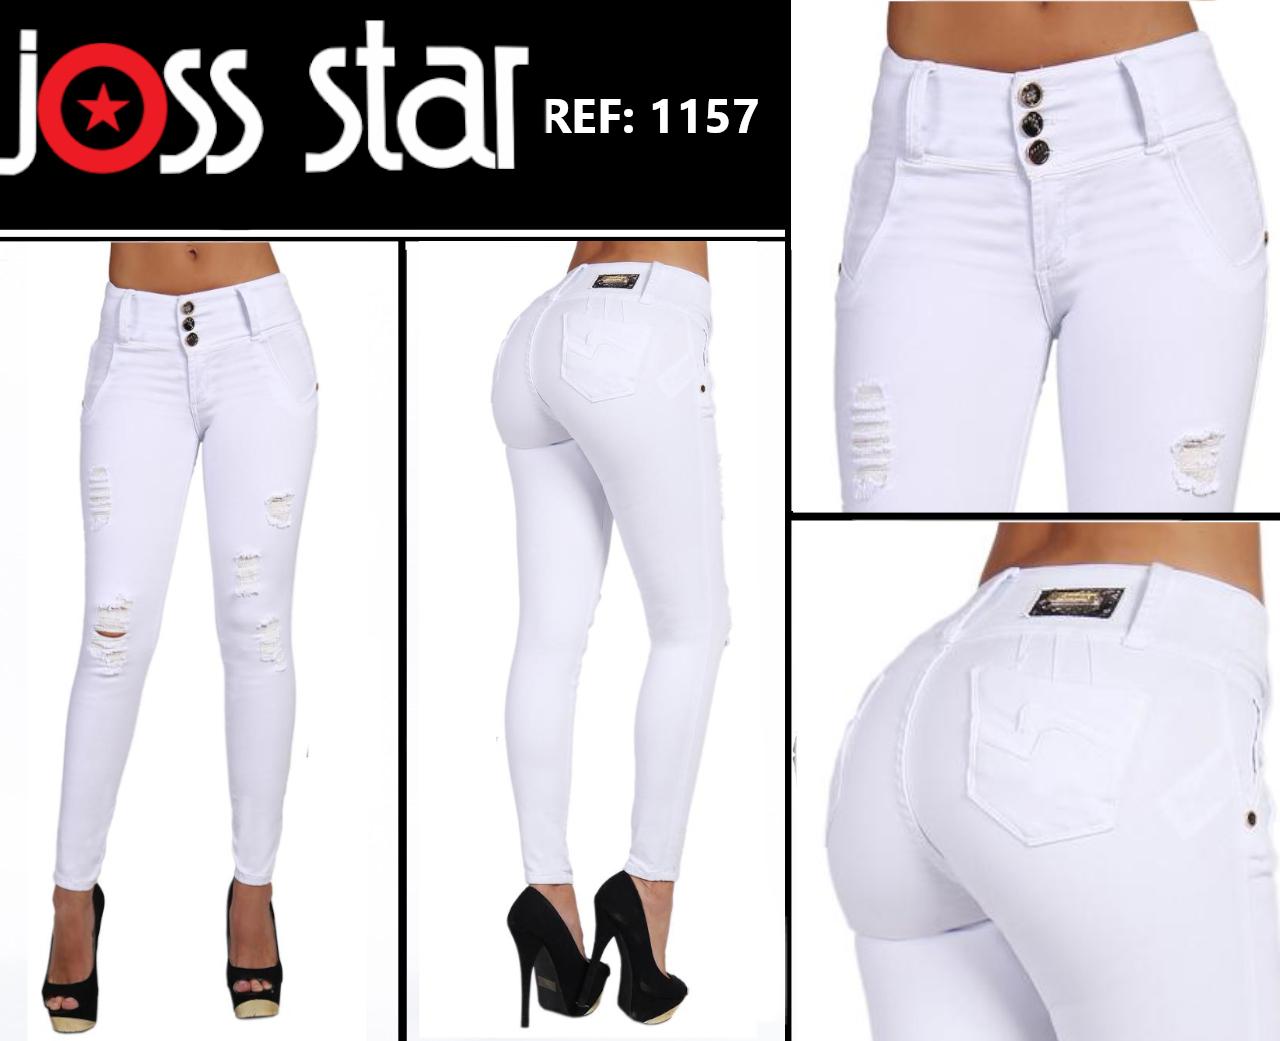 Comprar Jeans Colombiano Blanco Levantacola con Bolsillo Tracero y Pretina 3 botones marca Joss Star